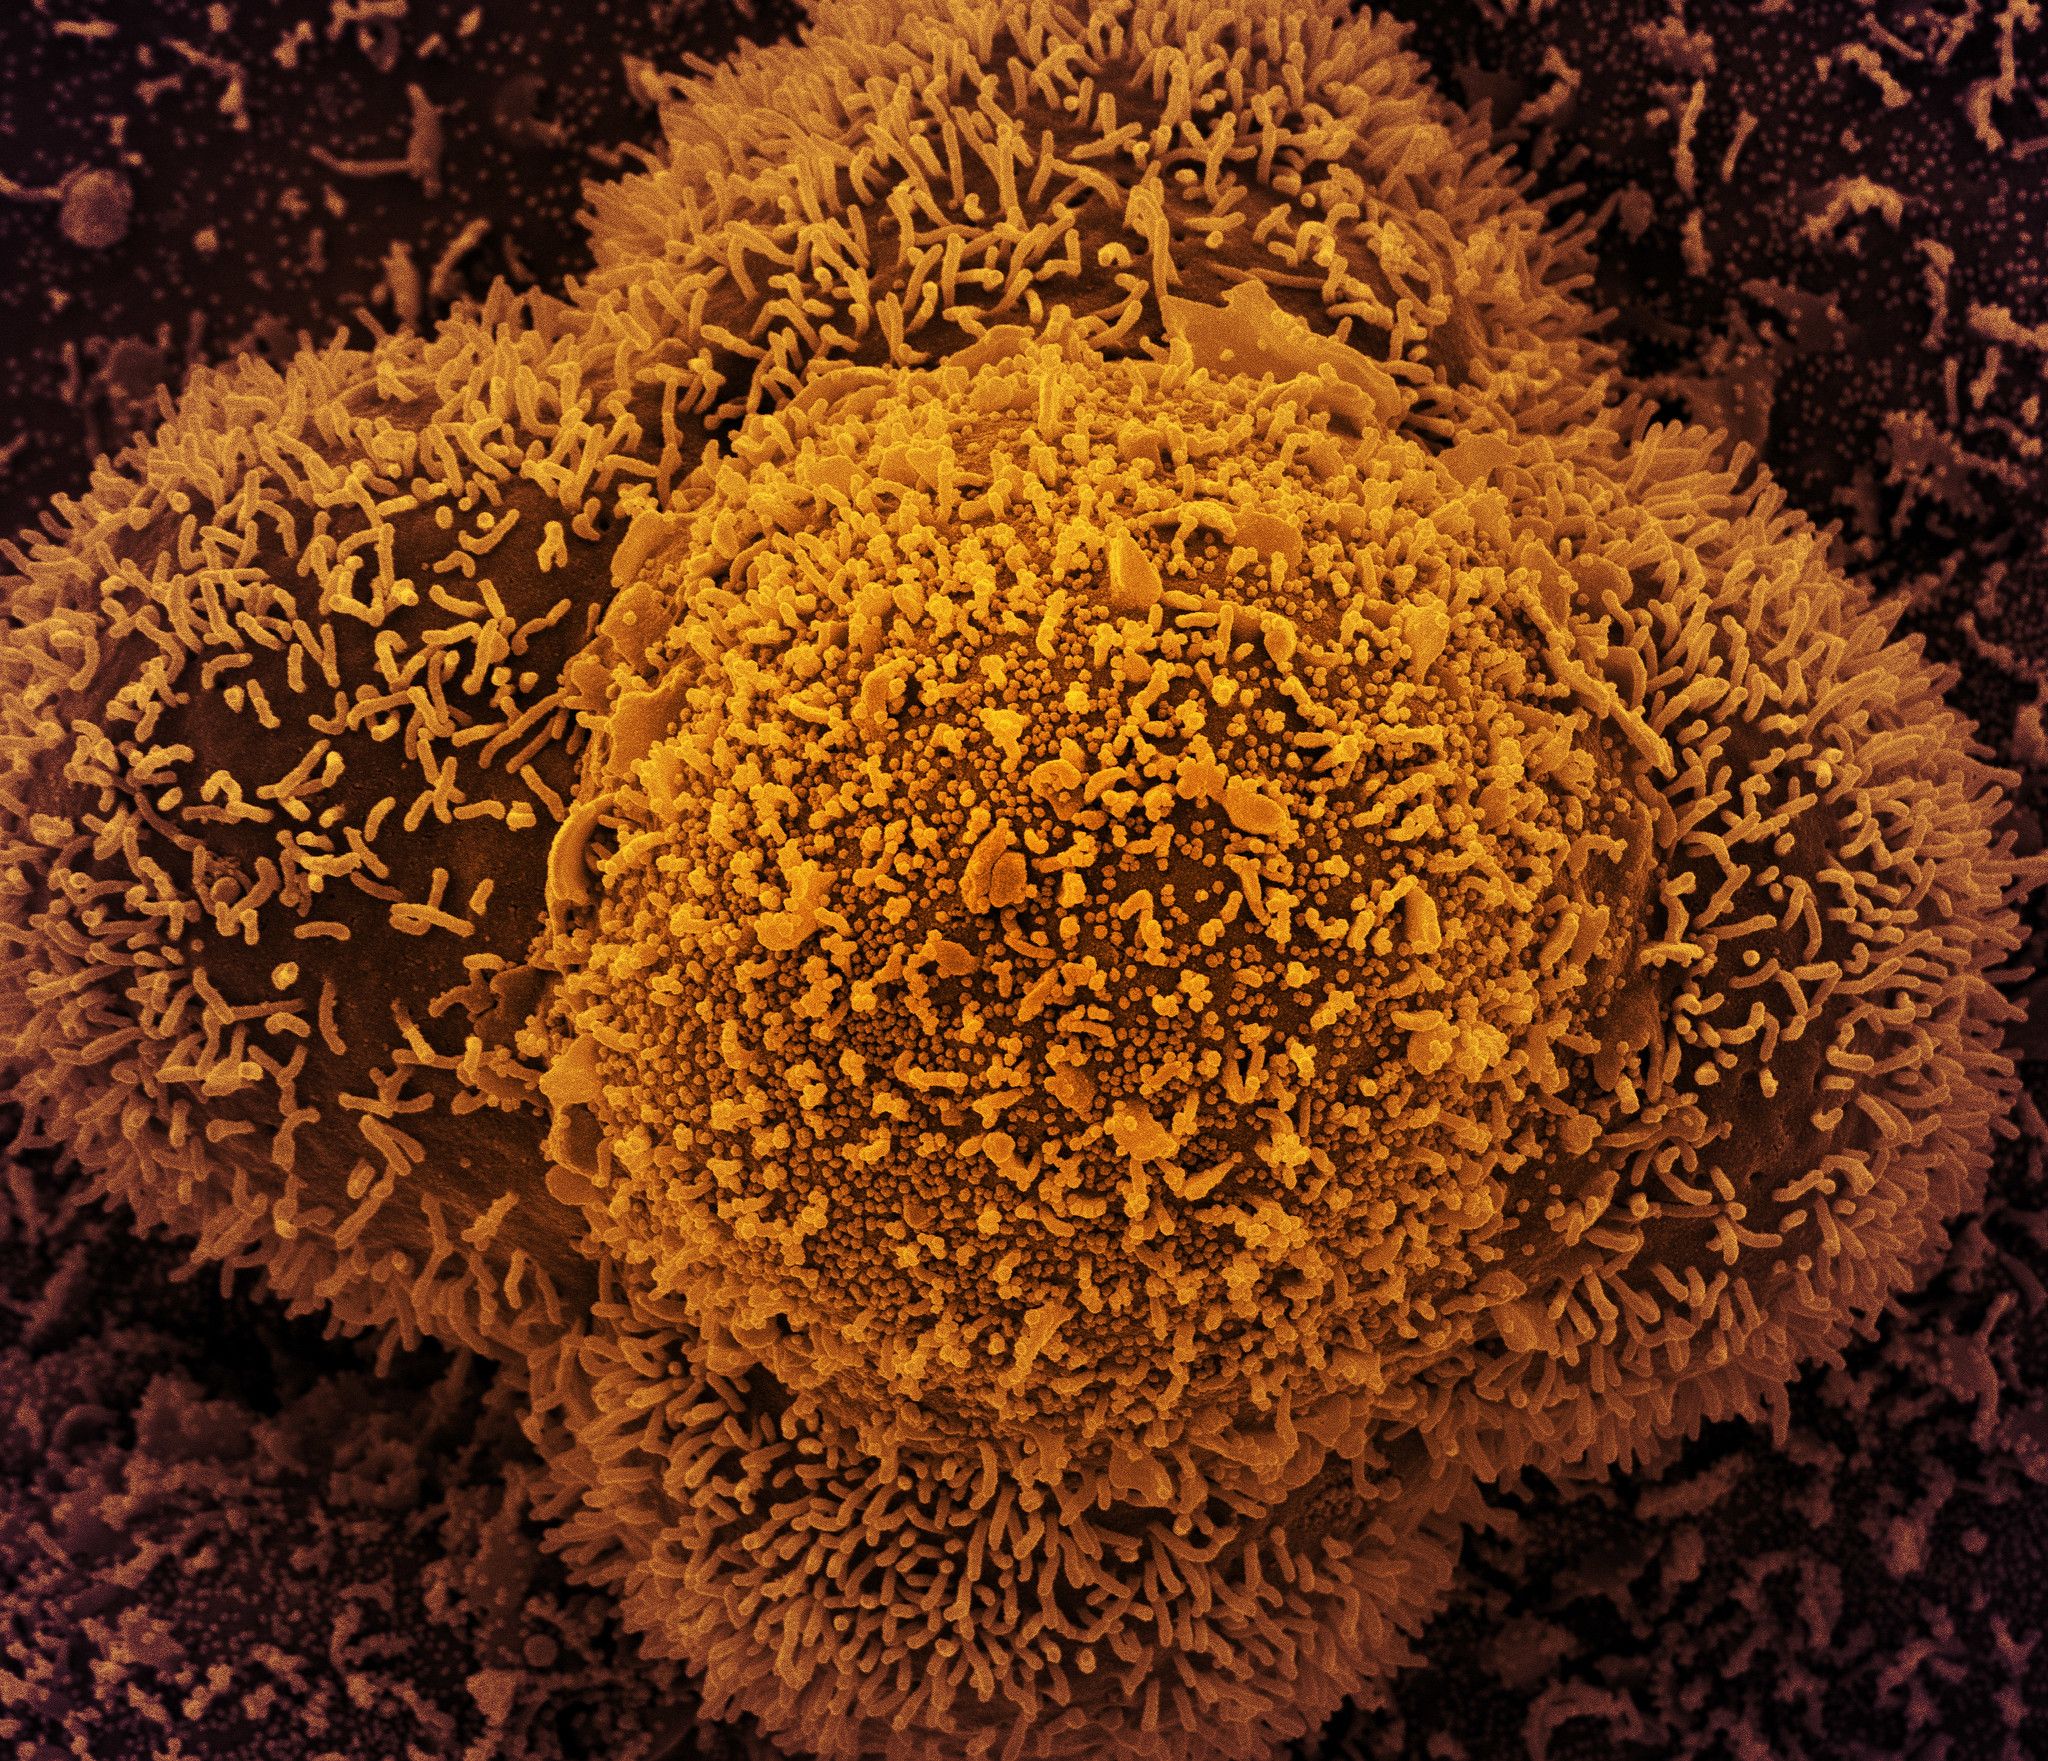 Células CCL-81 (células Vero utilizadas en investigación) fuertemente infectadas con partículas del virus SARS-CoV-2. NIAID / Flickr, CC BY-SA